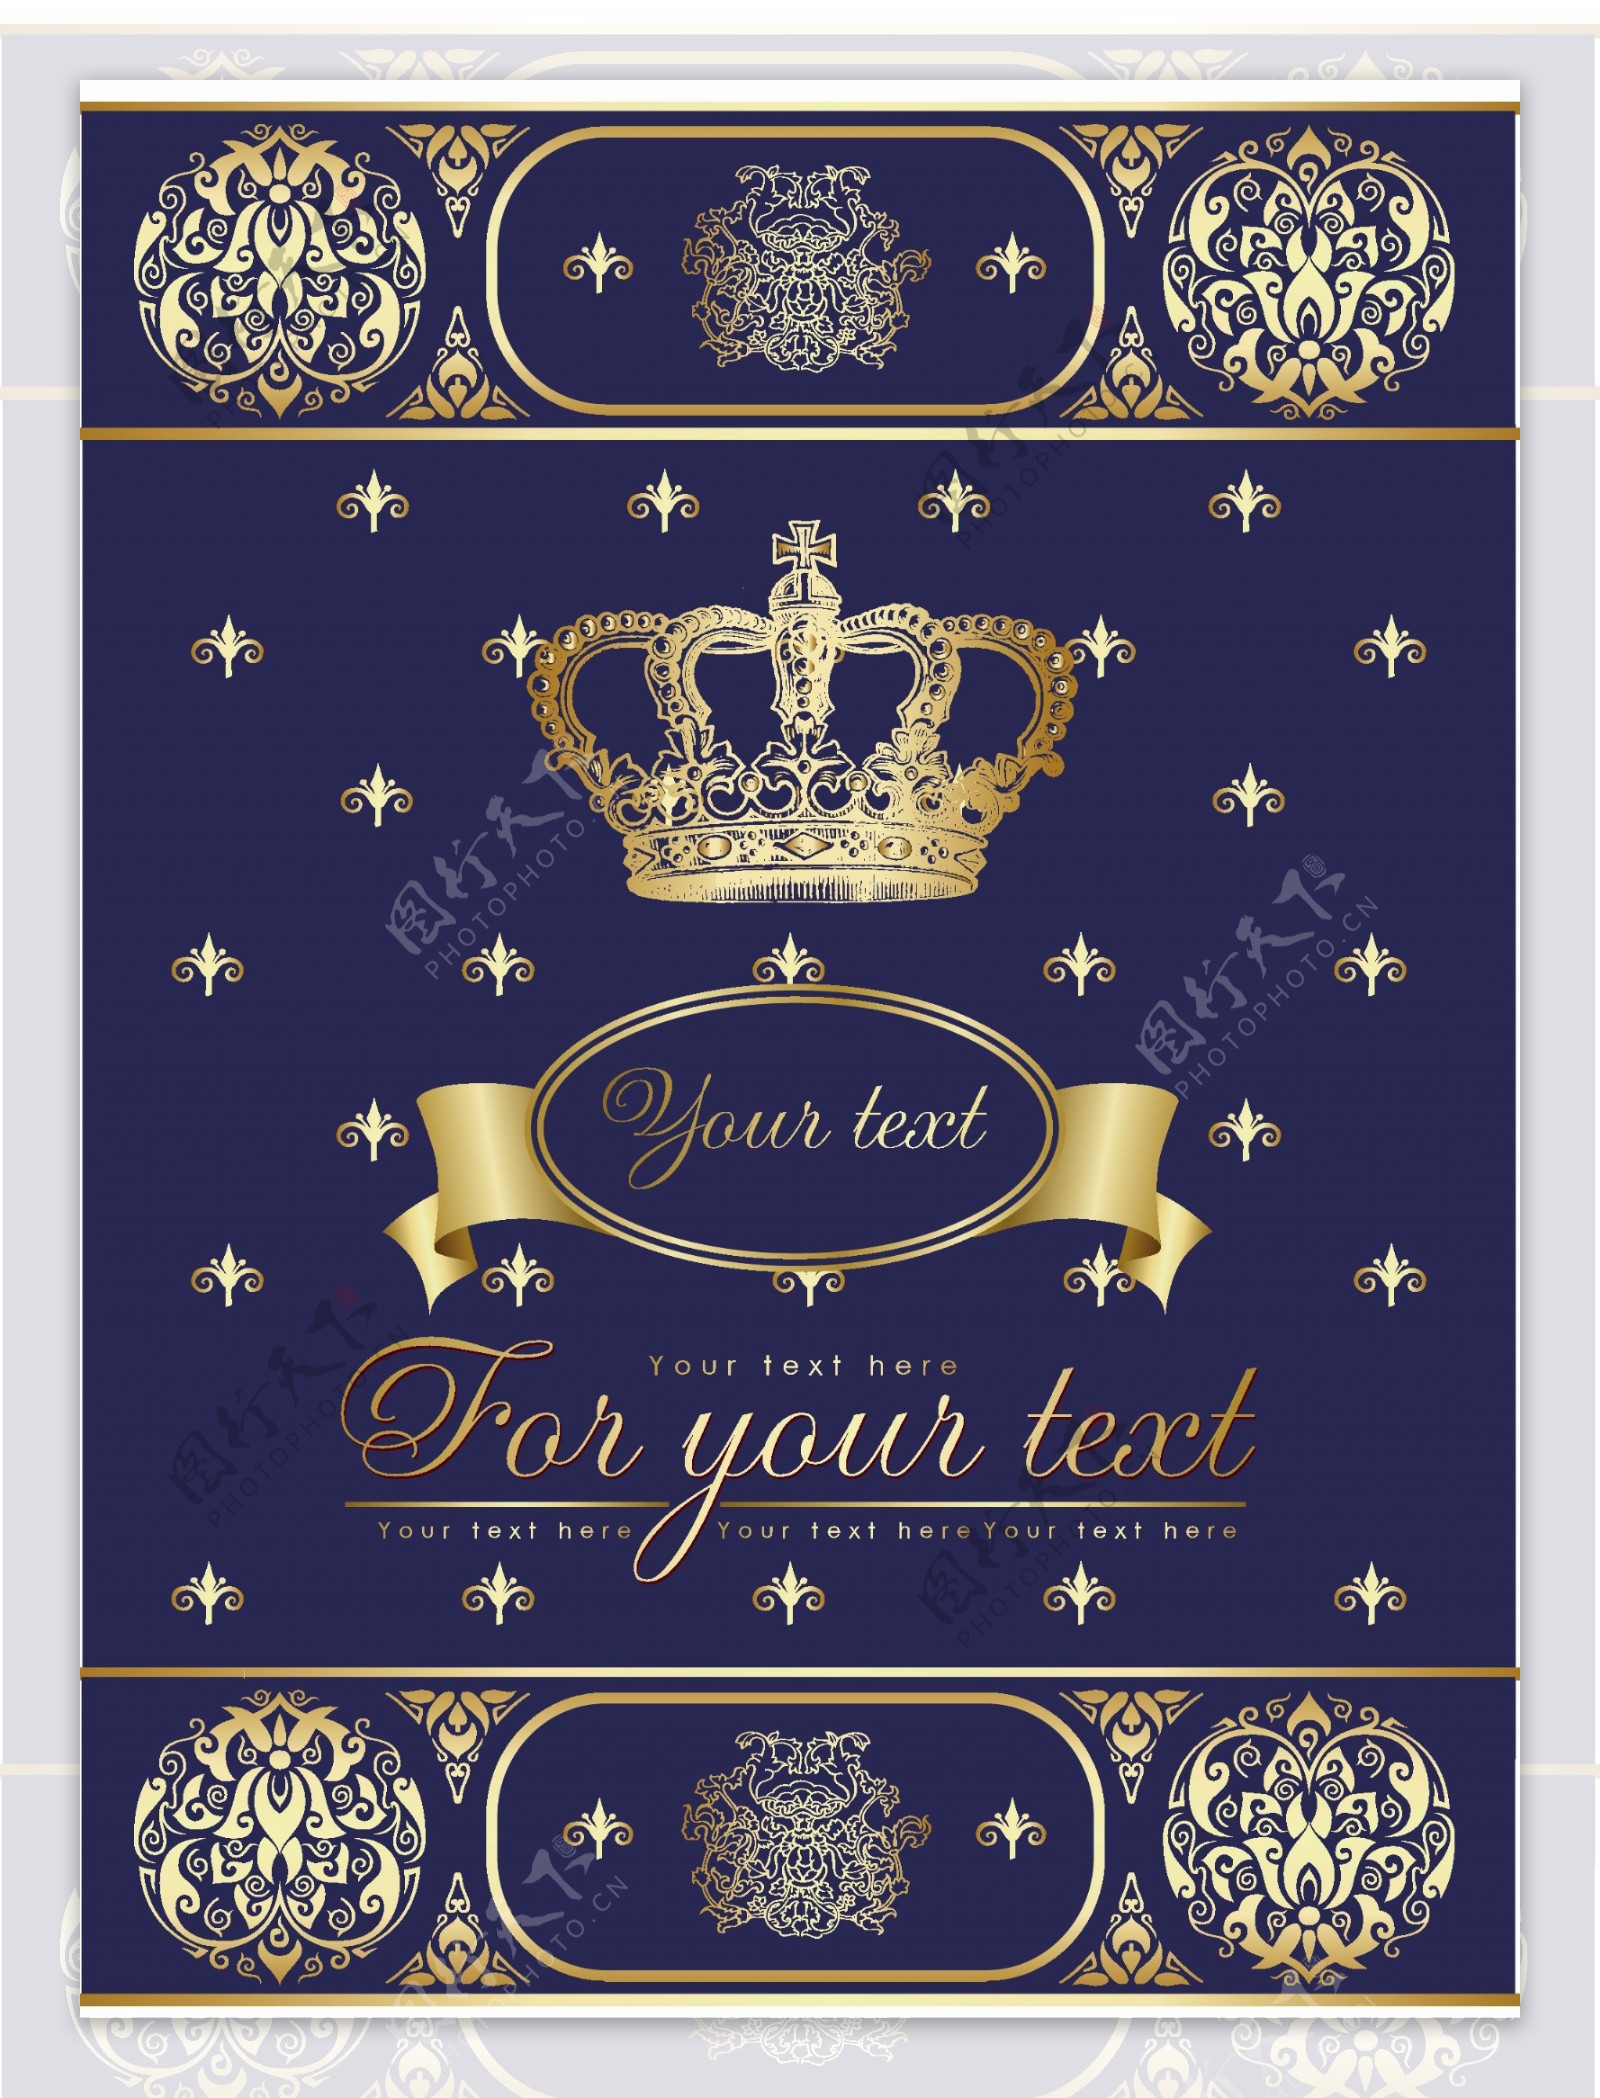 皇冠古典底纹背景矢量素材